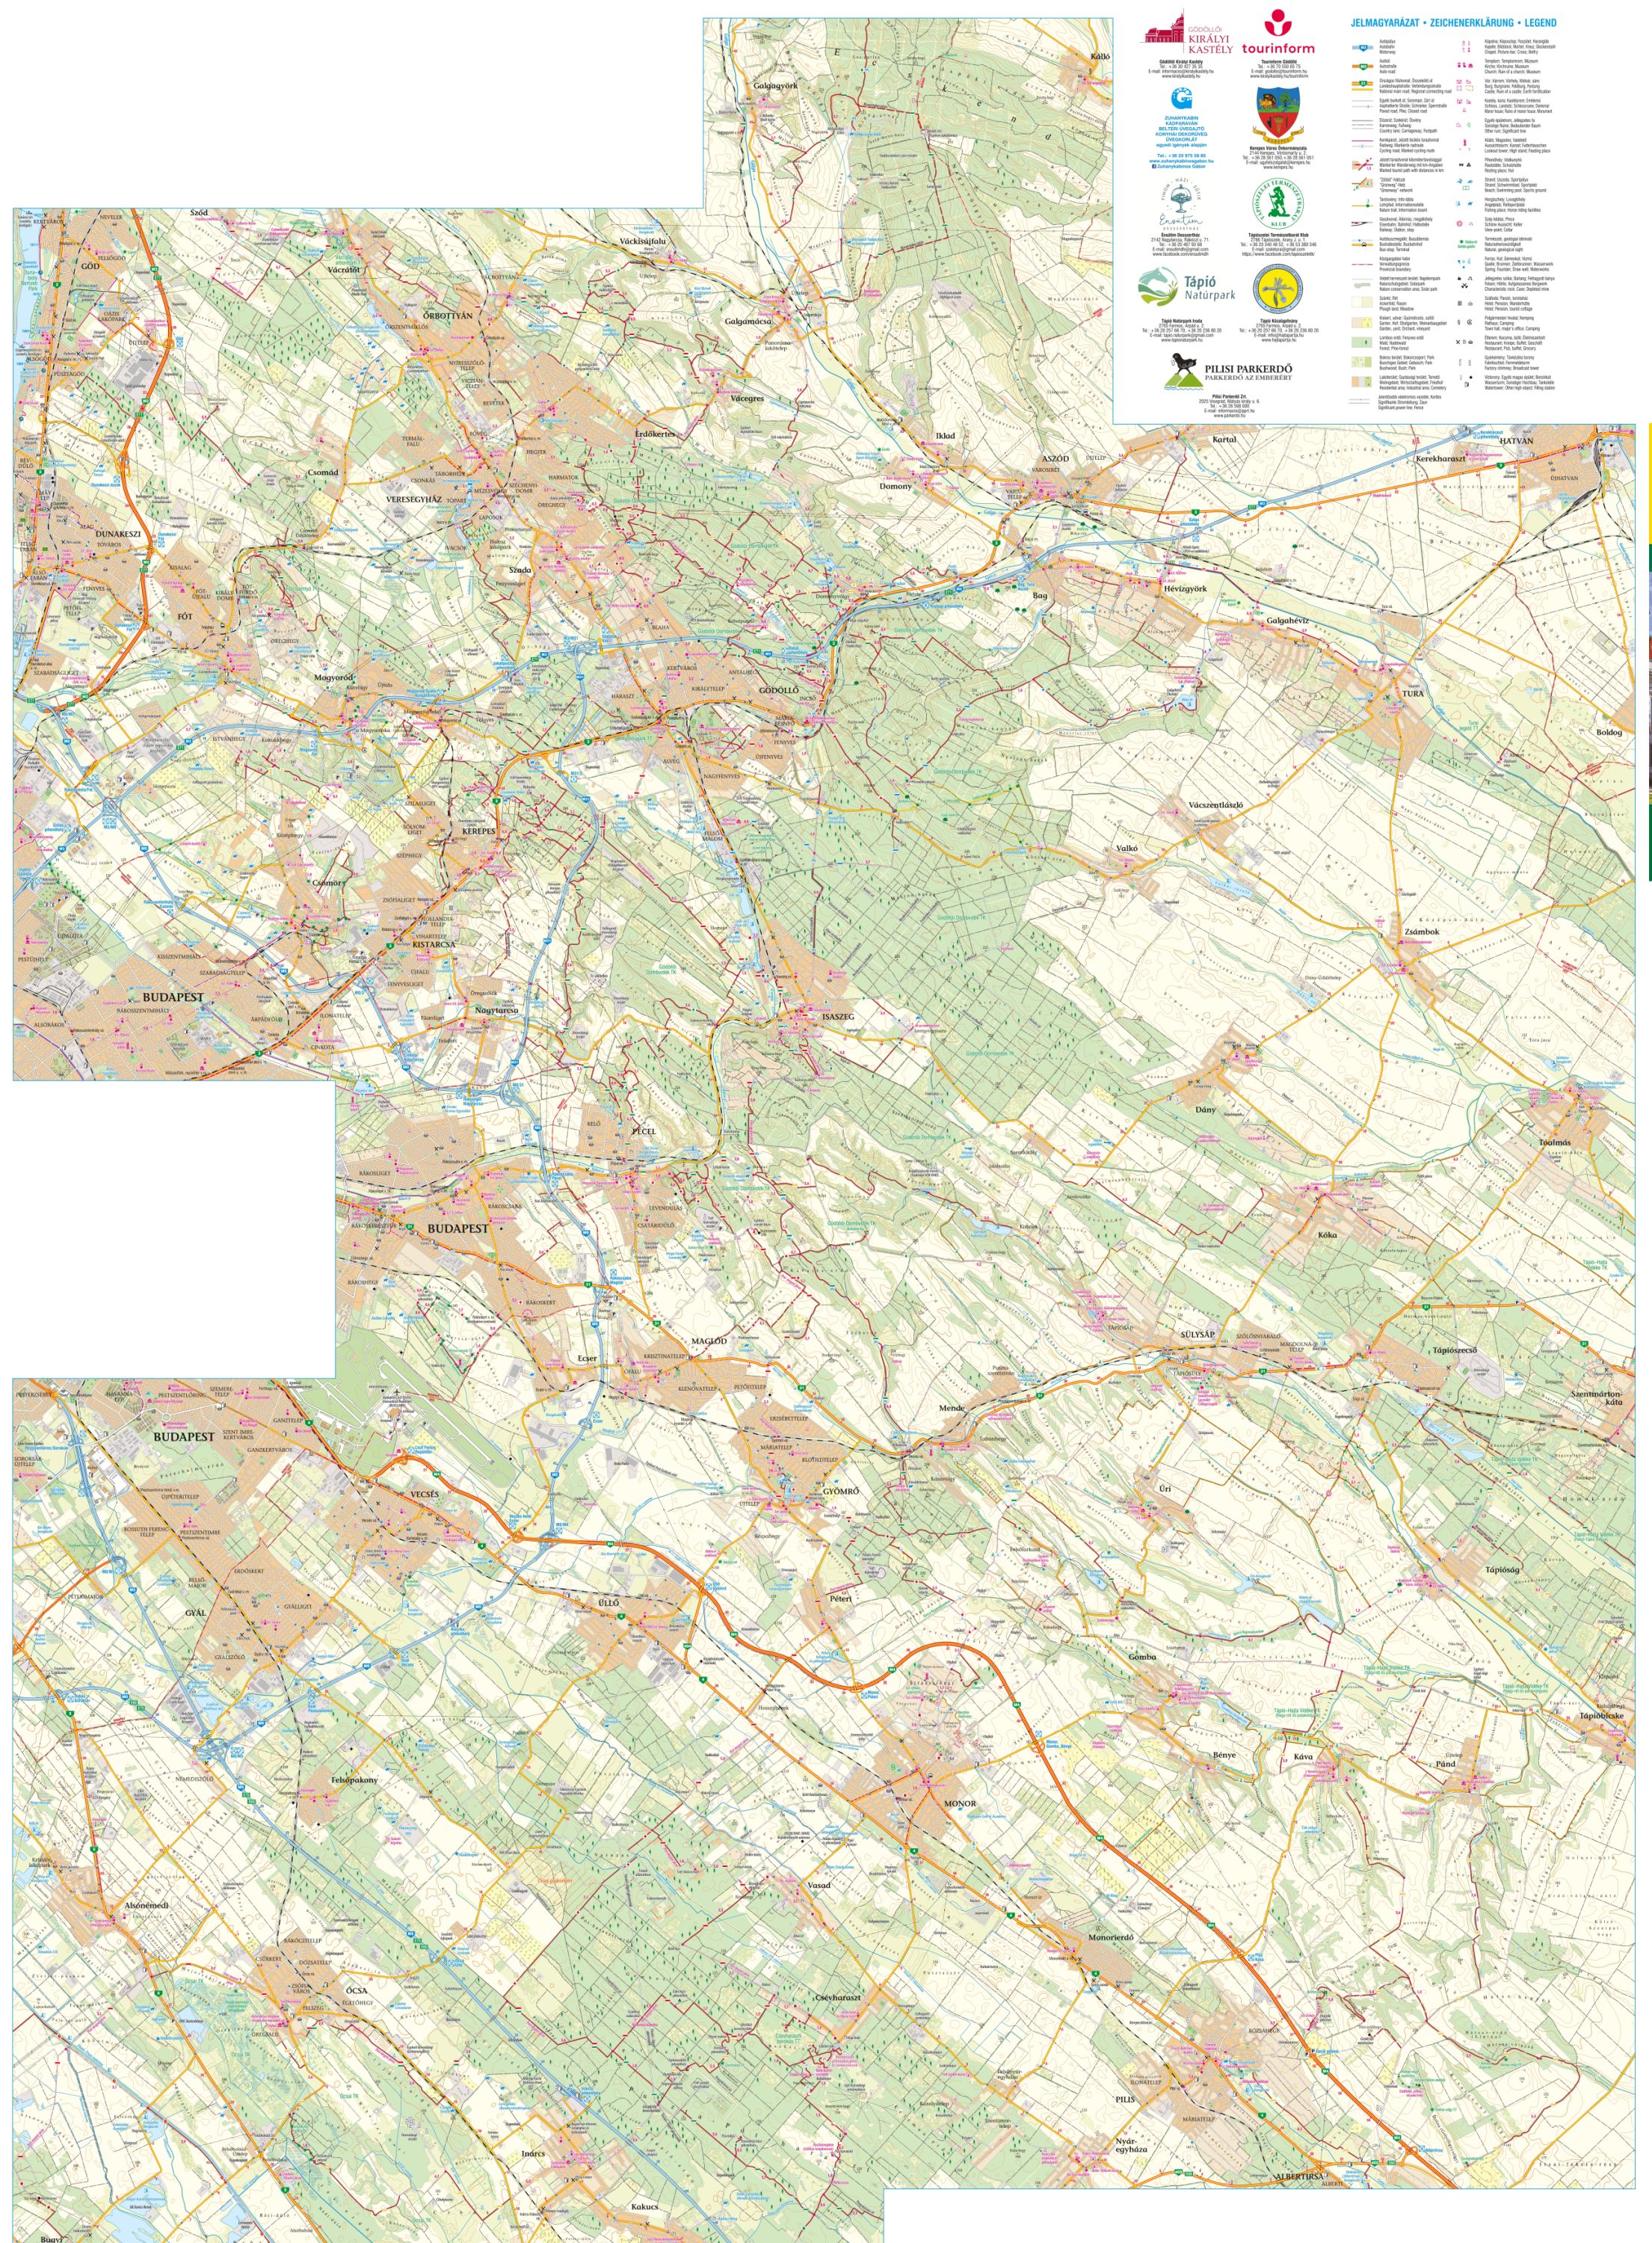 A Gödöllői-dombság térkép által lefedett terület